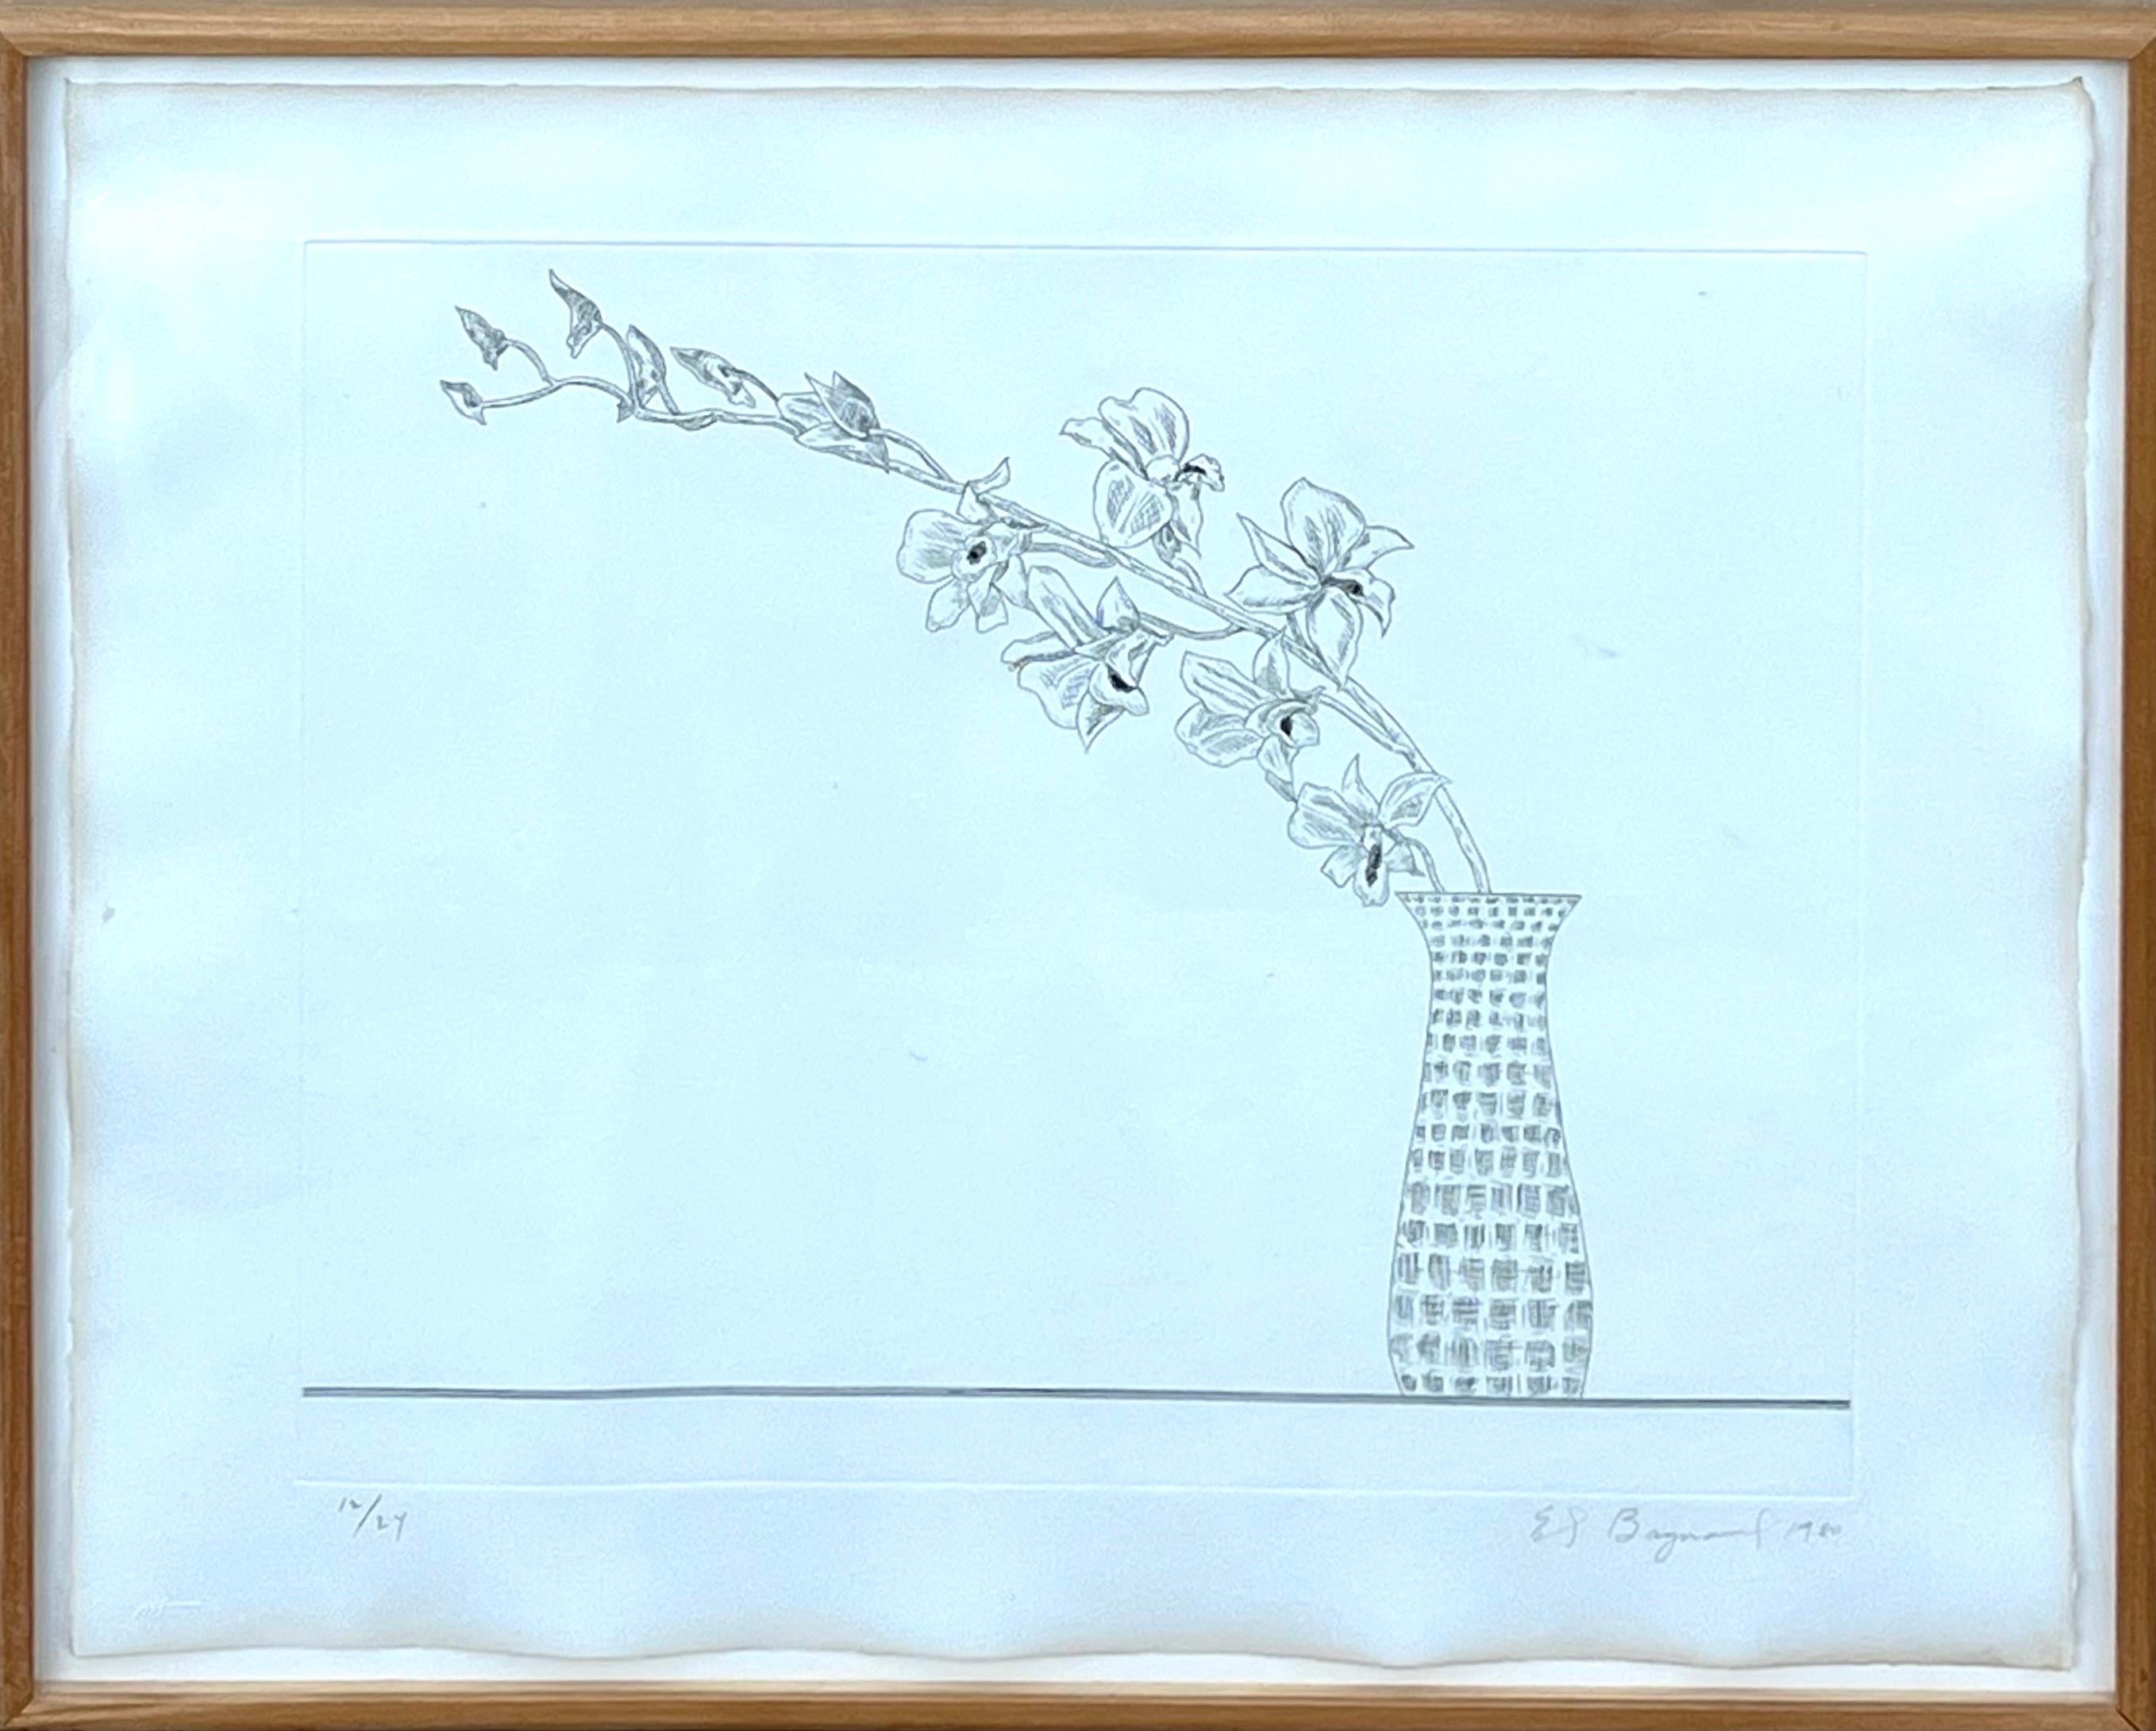 ED BAYNARD (Amerikaner, 1940-2016)
Blumen, Blumen in einer Vase, Radierung. 
1979/1980, 
Handsigniert, l.r. datiert, 
Handnummeriert aus kleiner Auflage  12/24, 
Abmessungen: 23 x 19 Zoll. Gerahmt 25 x 21 Zoll


1940 in Washington, D.C. geboren.